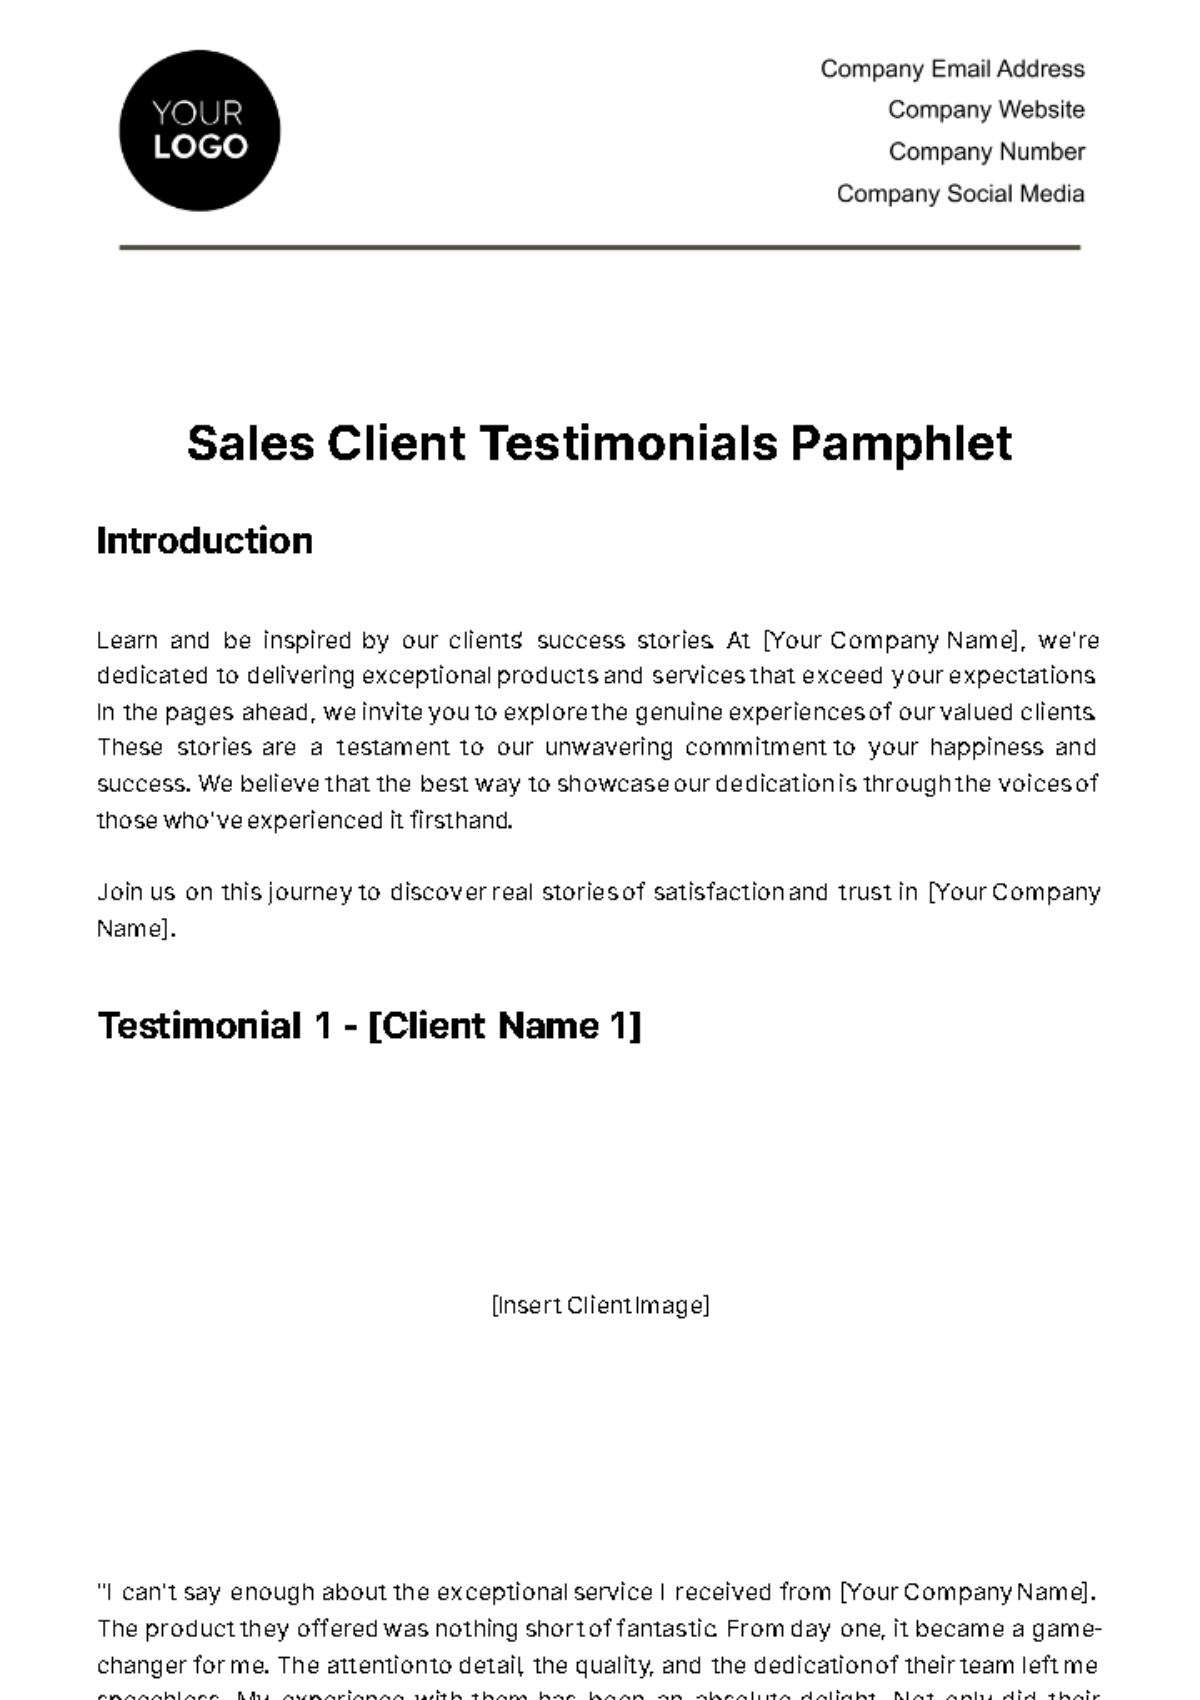 Sales Client Testimonials Pamphlet Template